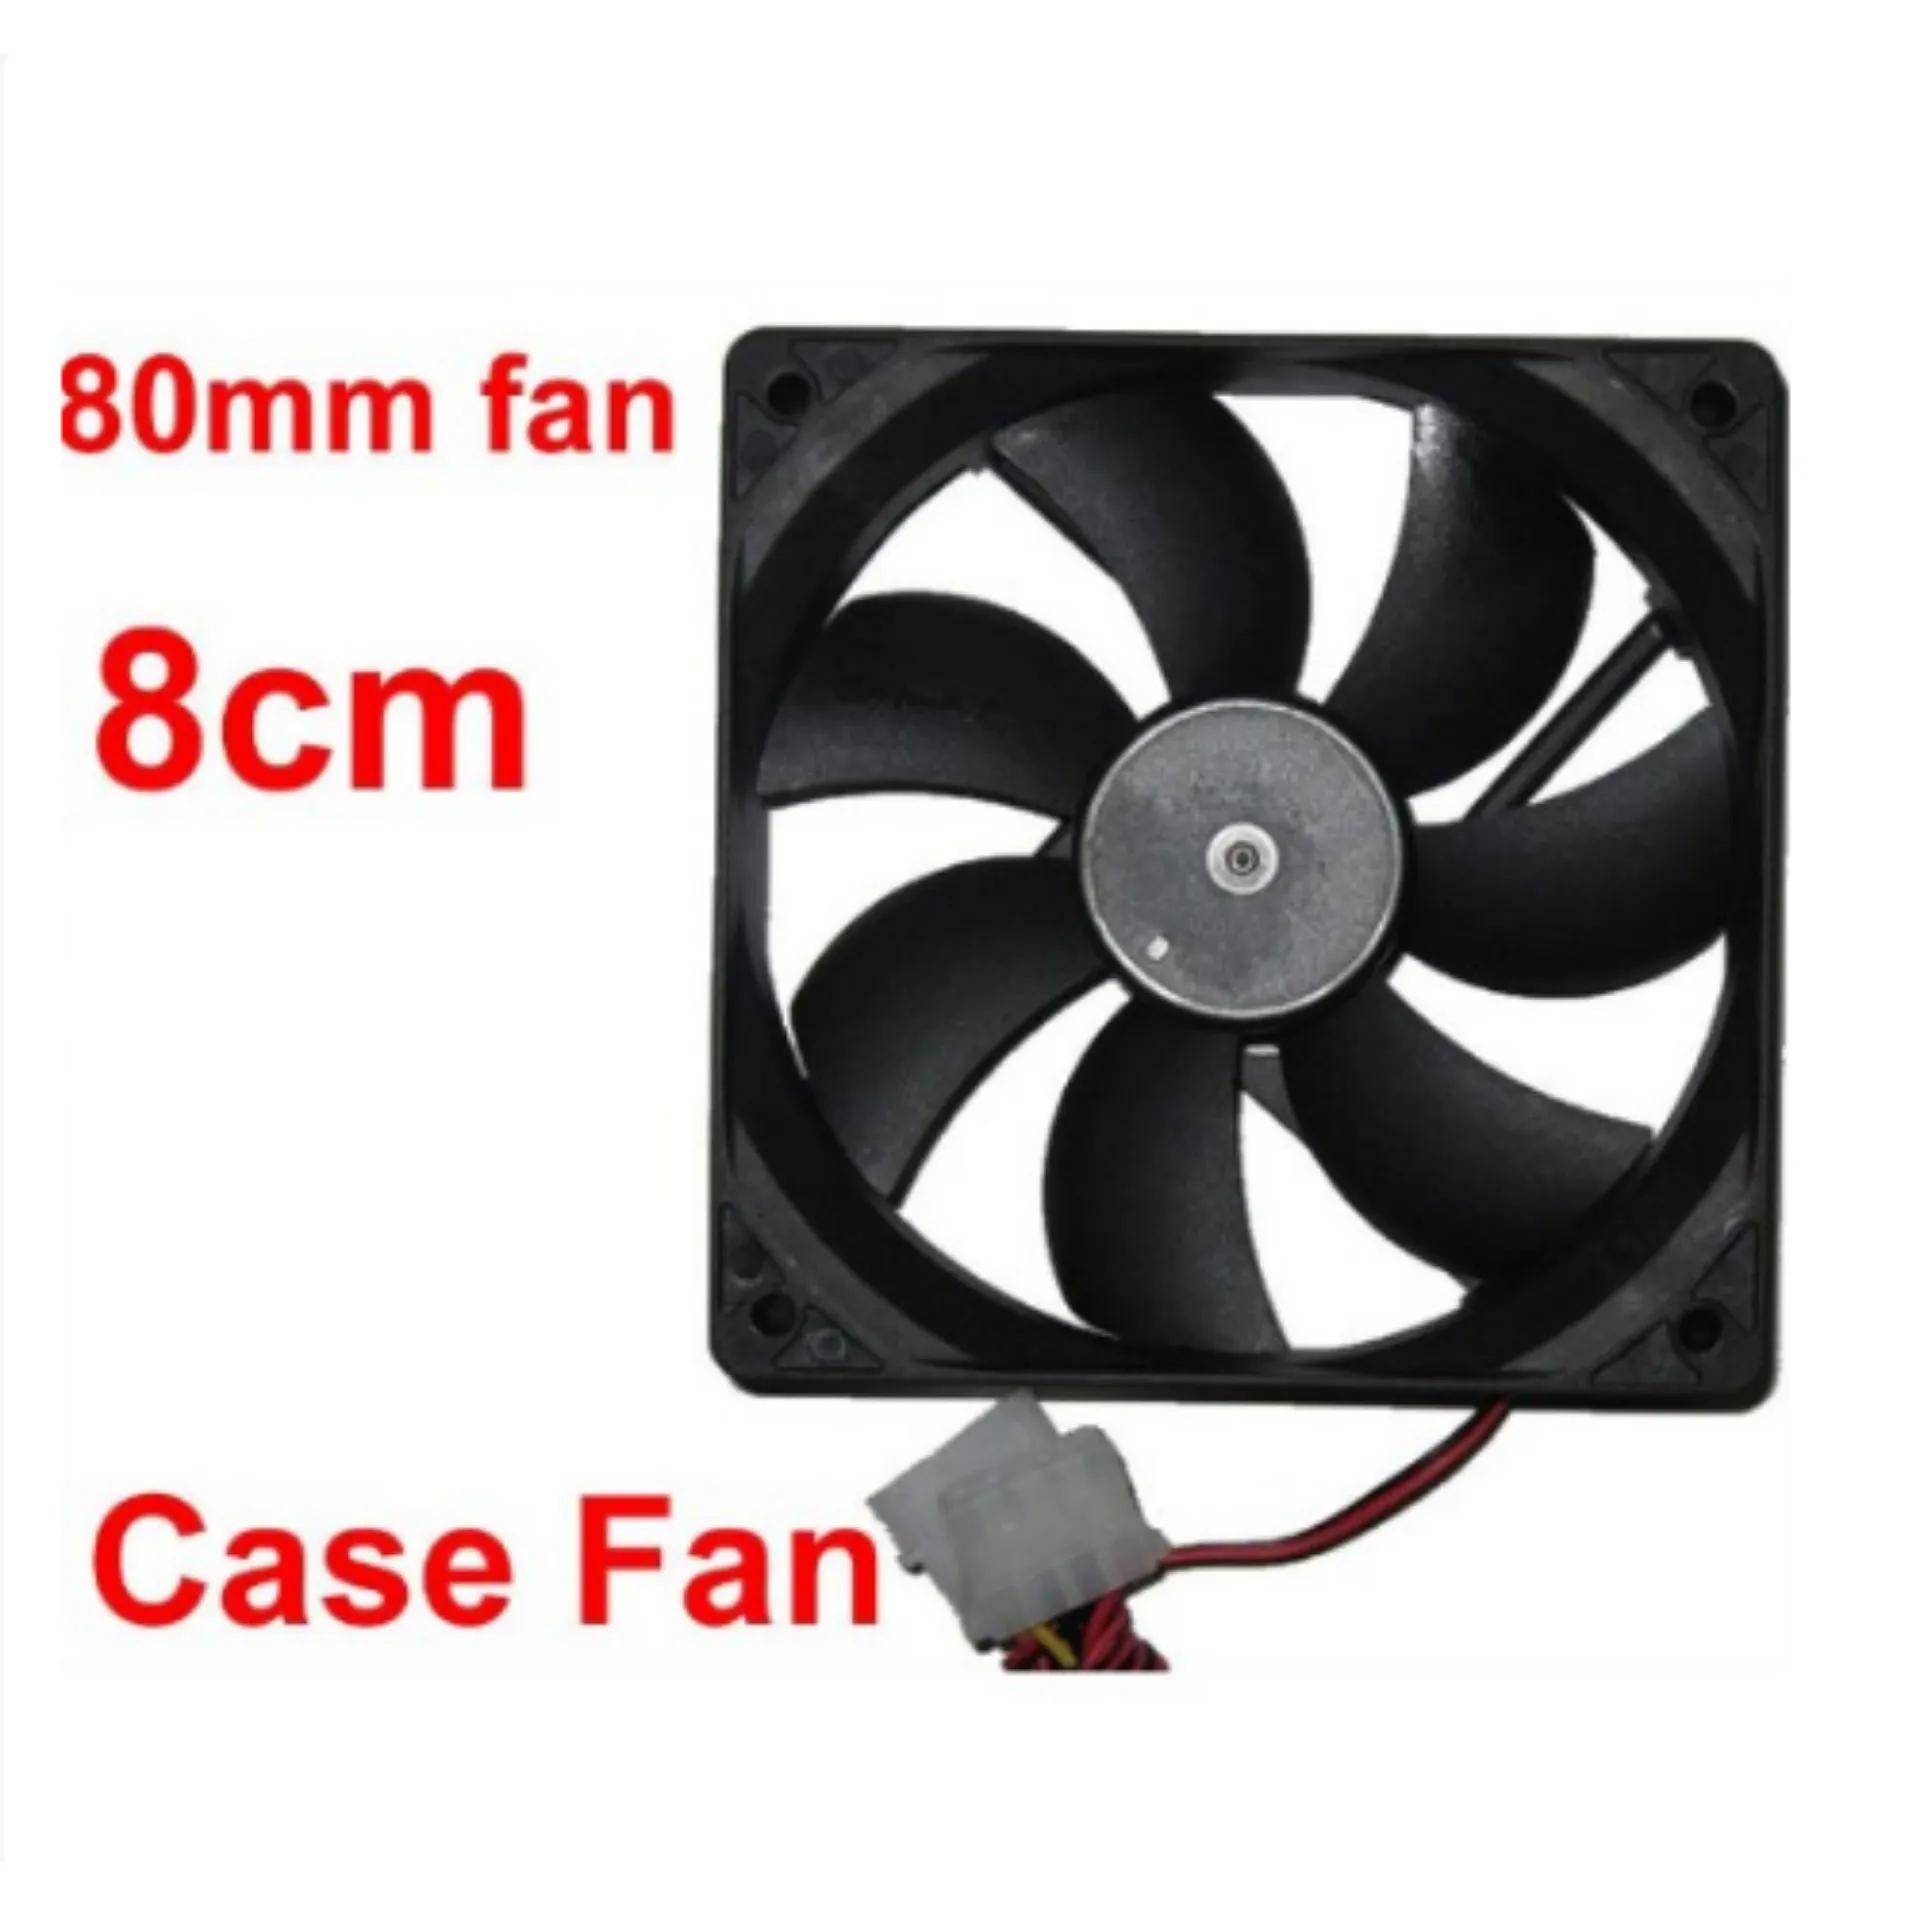 พัดลมระบายความร้อน คอม PC Fan Case PC พัดลม 8CM สีดำ